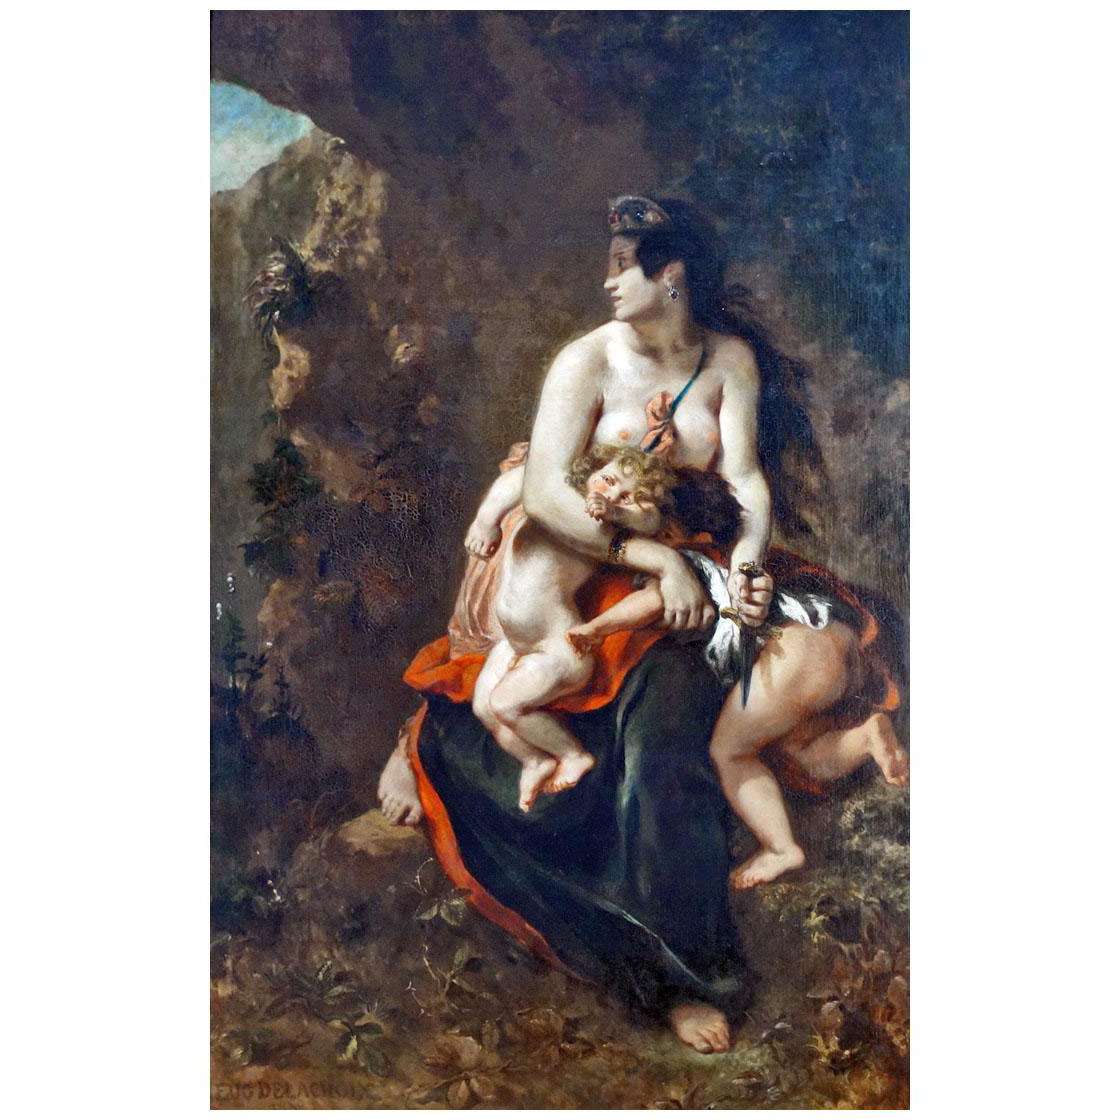 Eugene Delacroix. Medee. 1838. Palais des Beaux-Arts de Lille